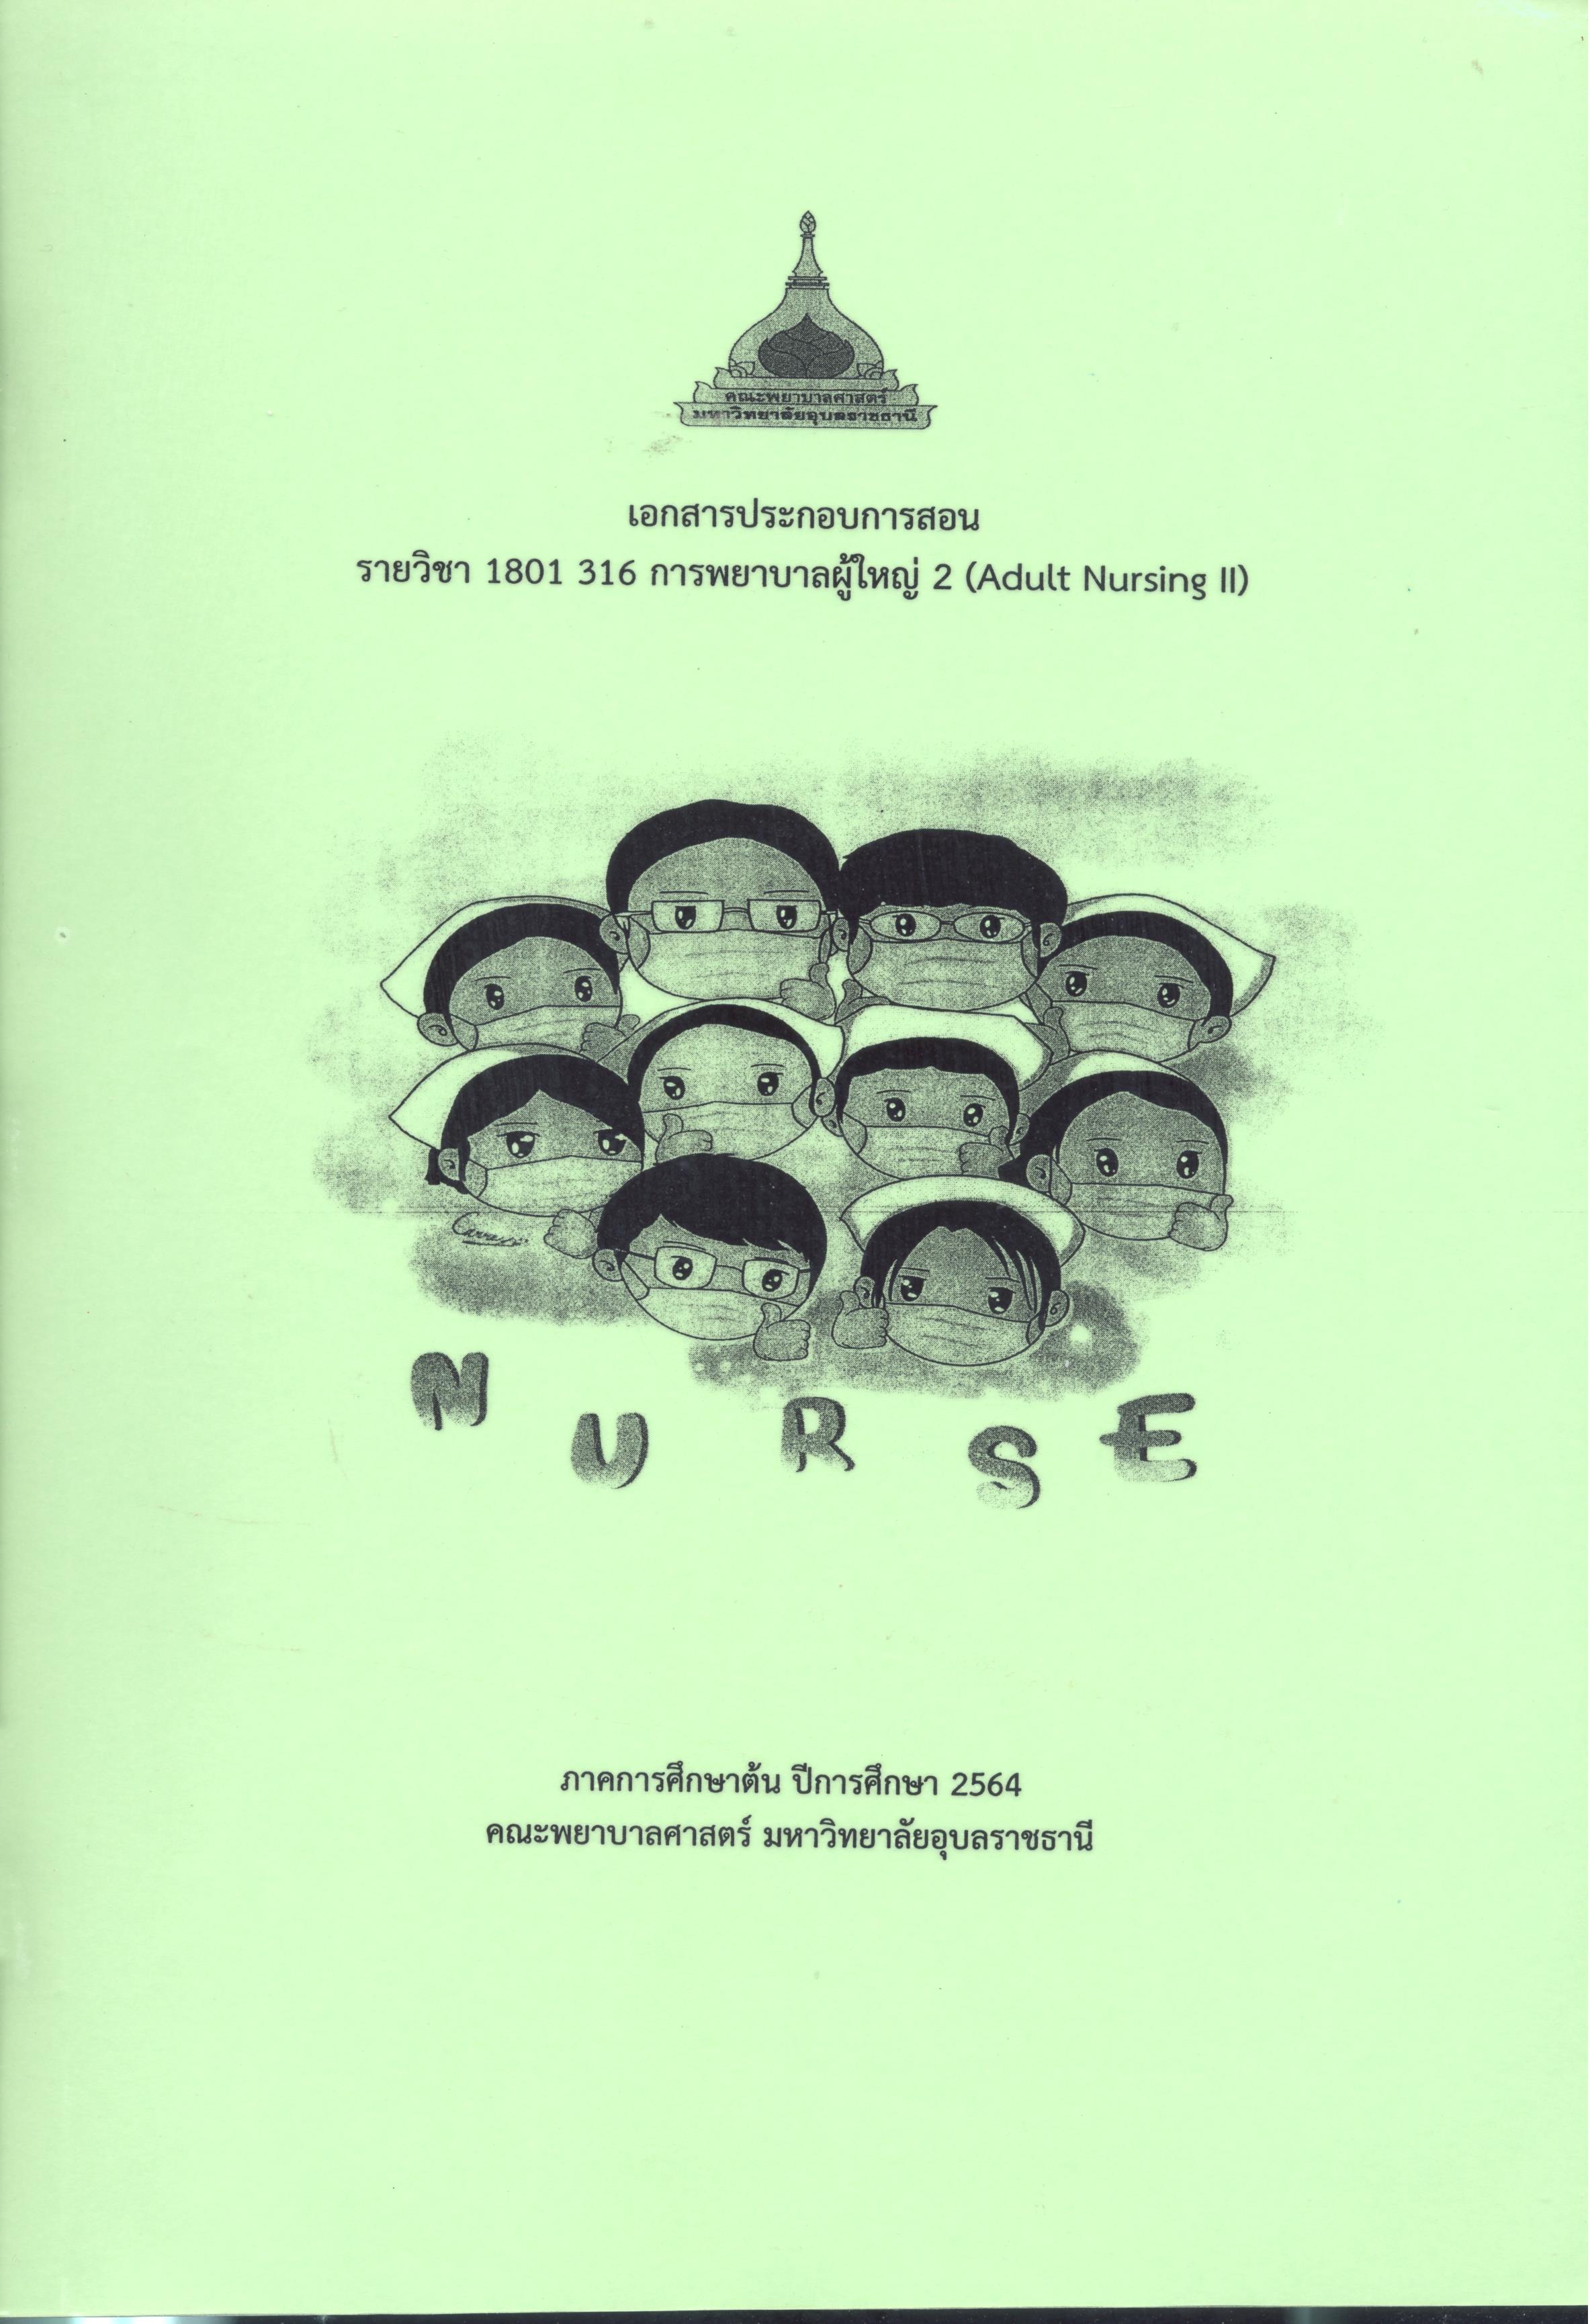 เอกสารประกอบการสอน รายวิชา 1801 316 การพยาบาลผู้ใหญ่ 2